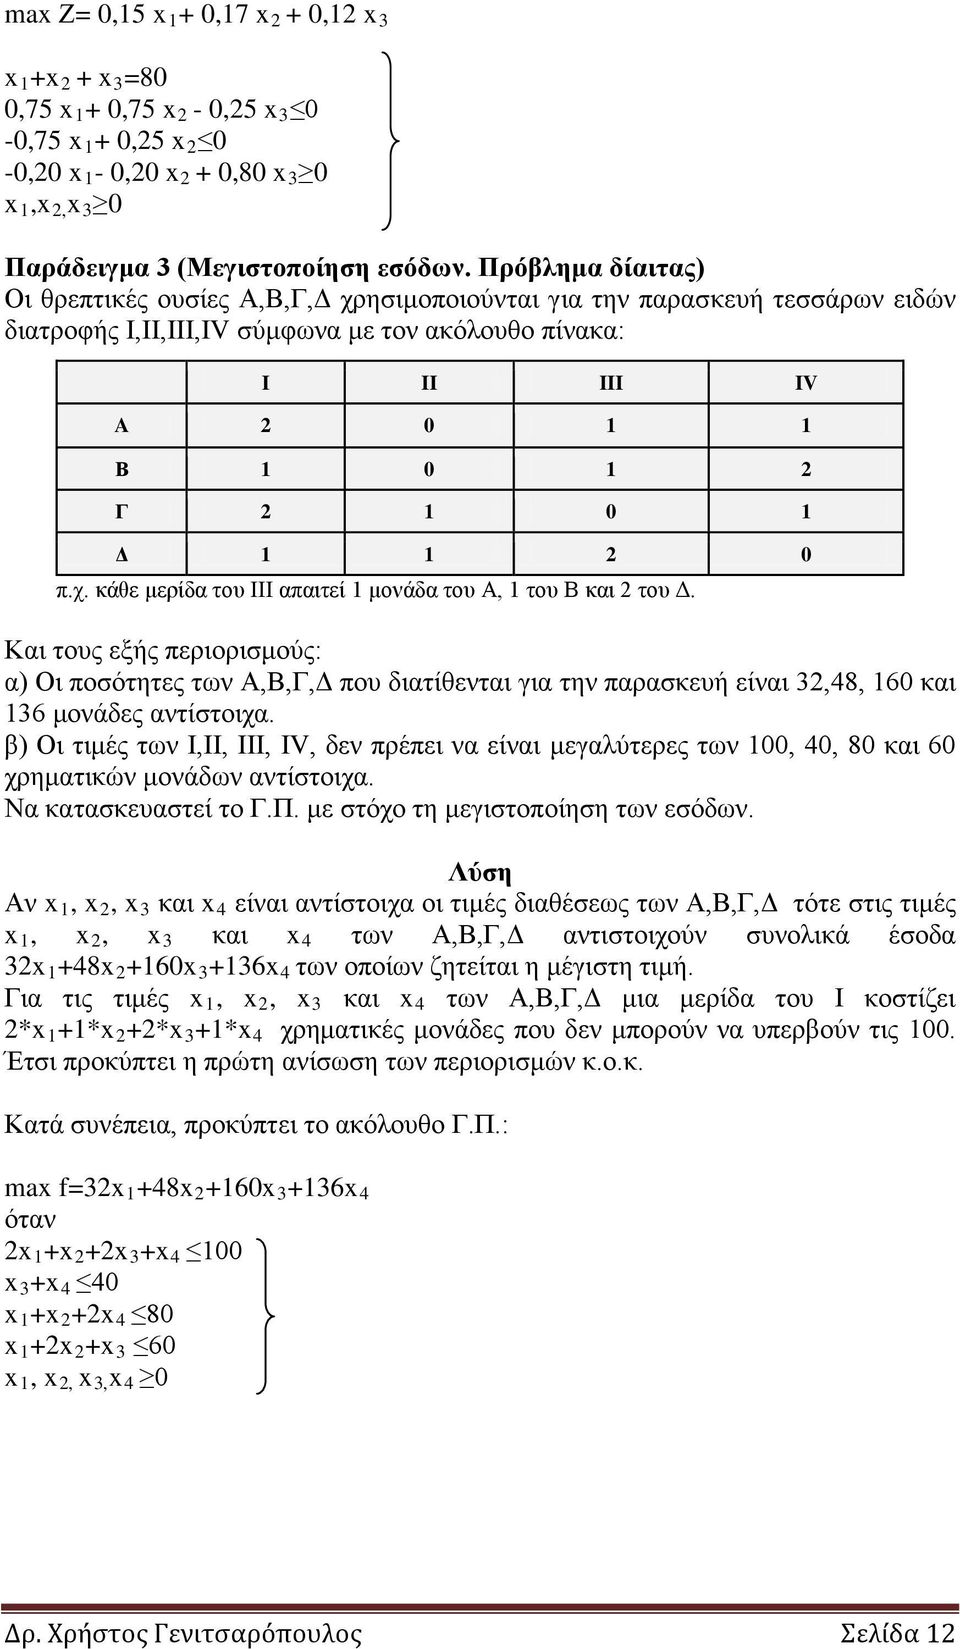 Και τους εξής περιορισμούς: α) Οι ποσότητες των Α,Β,Γ,Δ που διατίθενται για την παρασκευή είναι 32,48, 160 και 136 μονάδες αντίστοιχα.